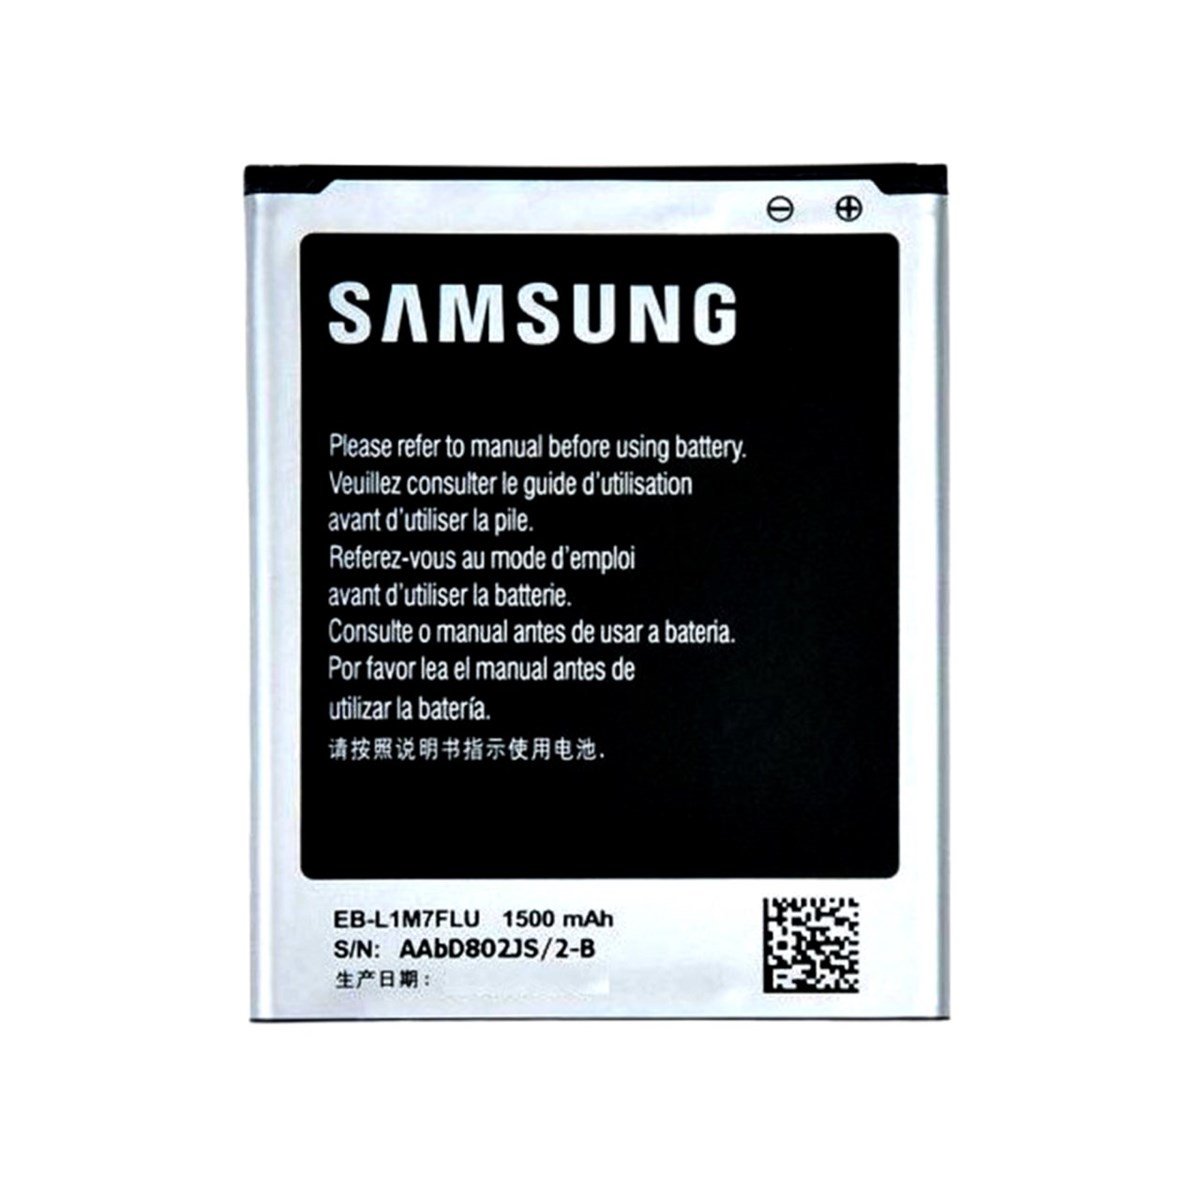 Samsung Galaxy S3 Mini i8190 Batarya Pil Servis EB-L1M7FLU - tekyerdenal.com